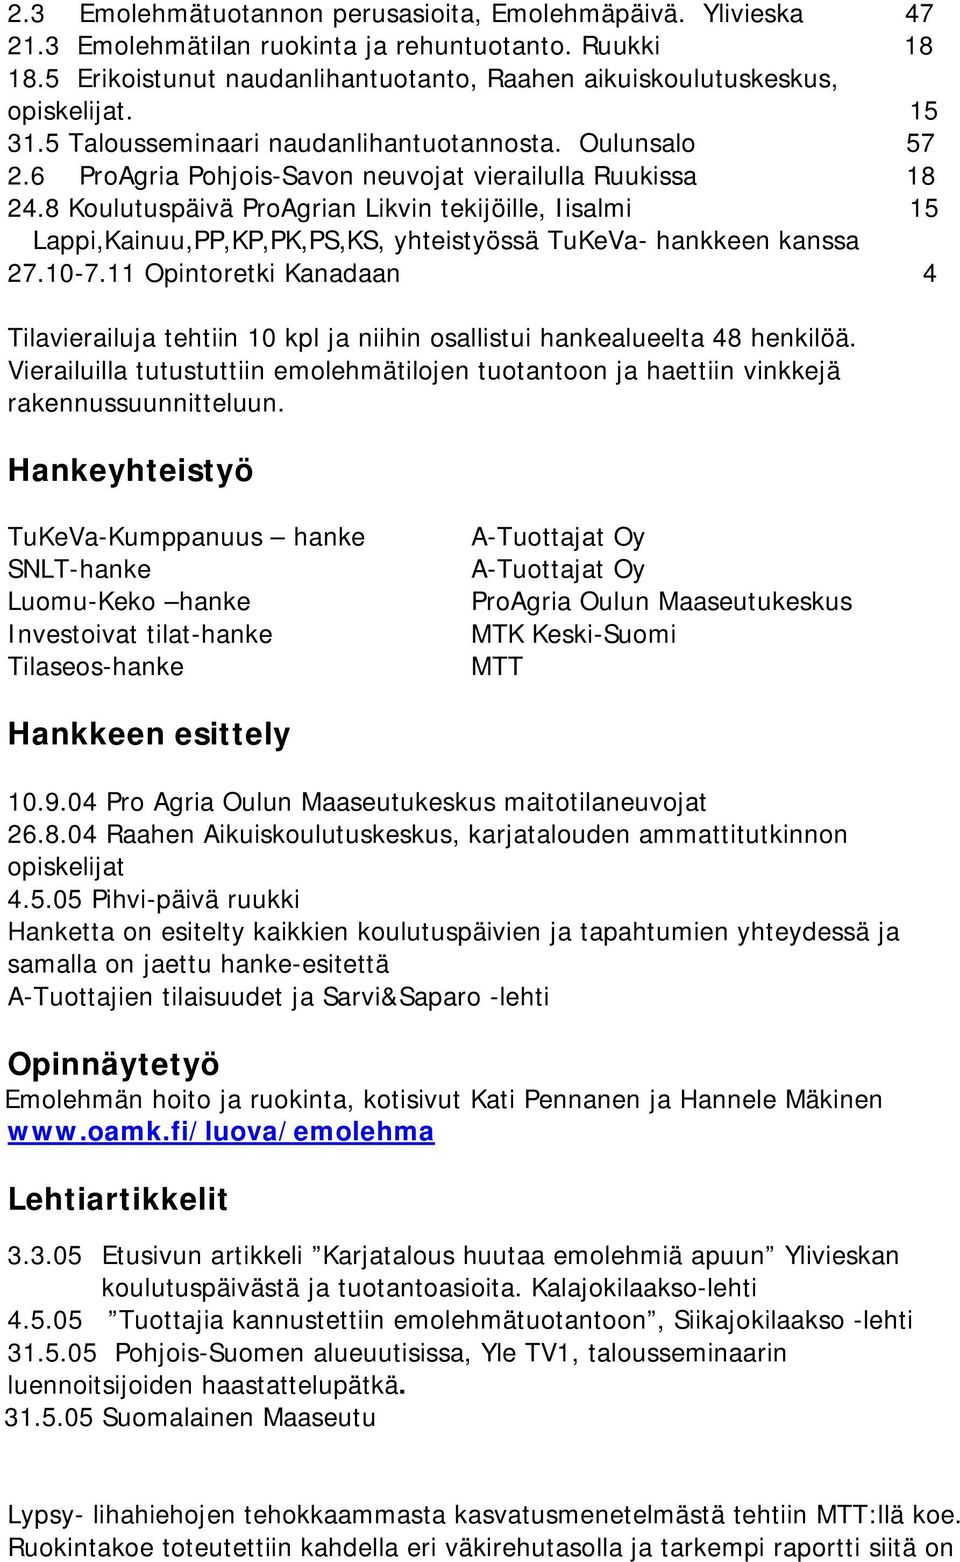 8 Koulutuspäivä ProAgrian Likvin tekijöille, Iisalmi 15 Lappi,Kainuu,PP,KP,PK,PS,KS, yhteistyössä TuKeVa- hankkeen kanssa 27.10-7.